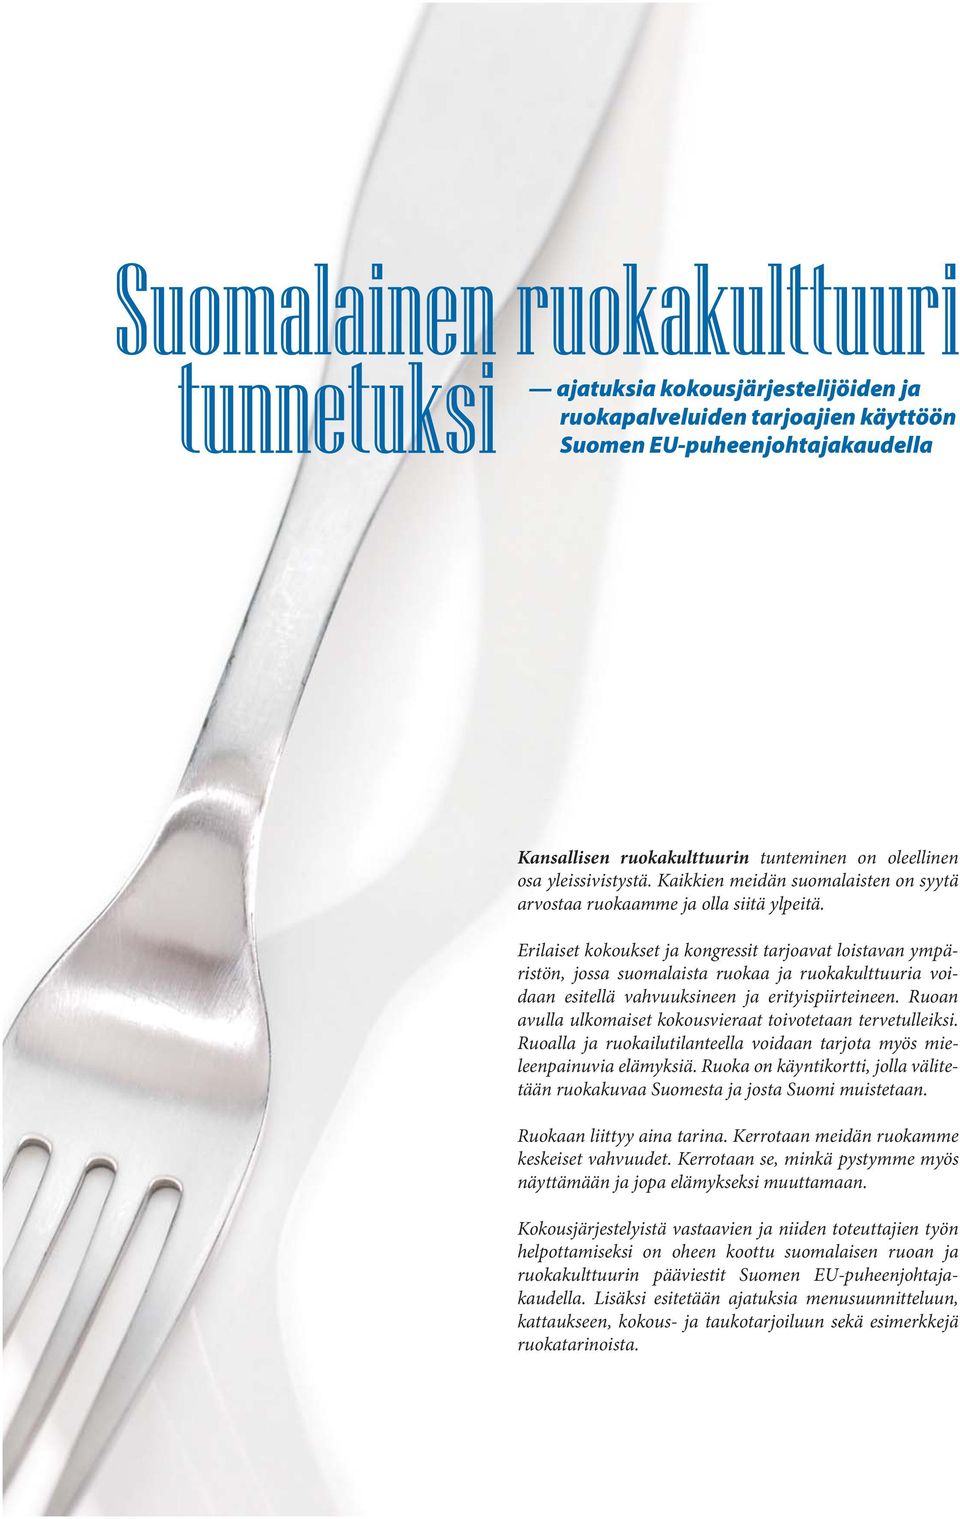 Erilaiset kokoukset ja kongressit tarjoavat loistavan ympäristön, jossa suomalaista ruokaa ja ruokakulttuuria voidaan esitellä vahvuuksineen ja erityispiirteineen.